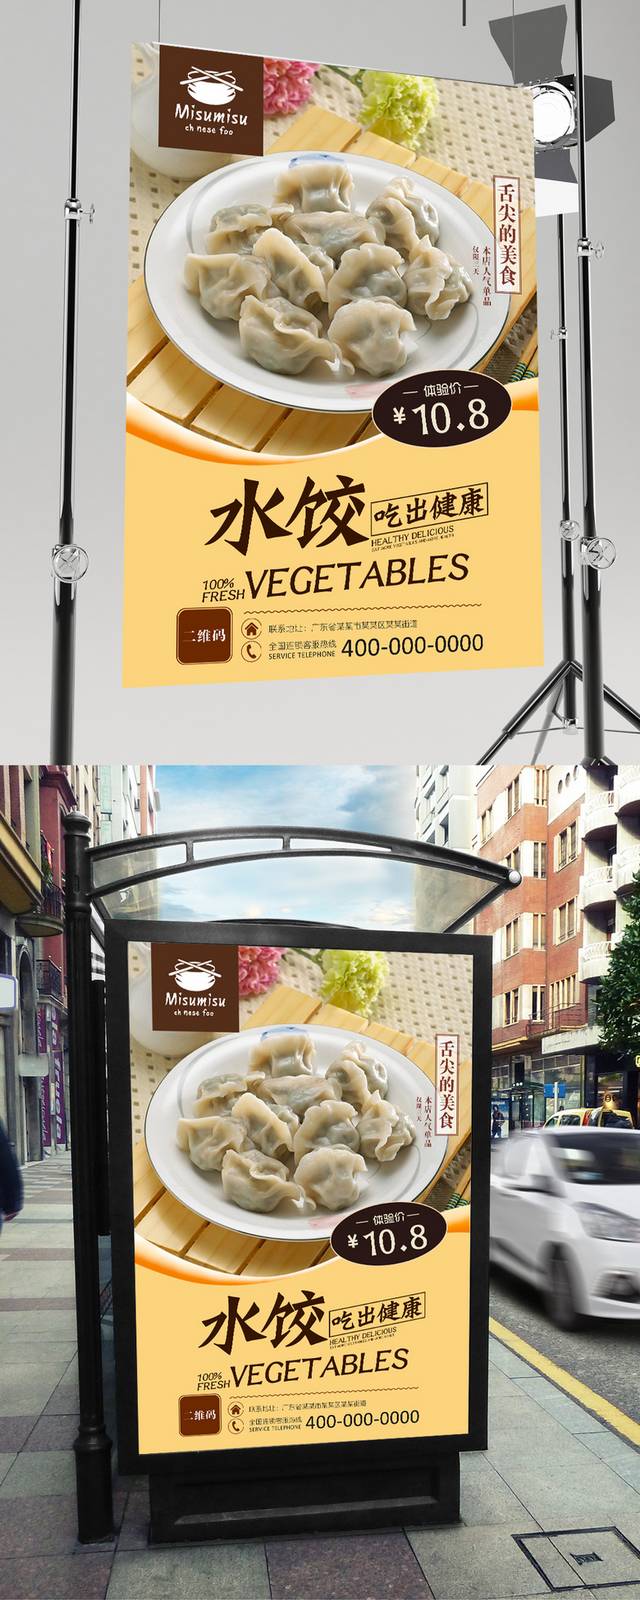 哈尔滨水饺宣传海报设计下载